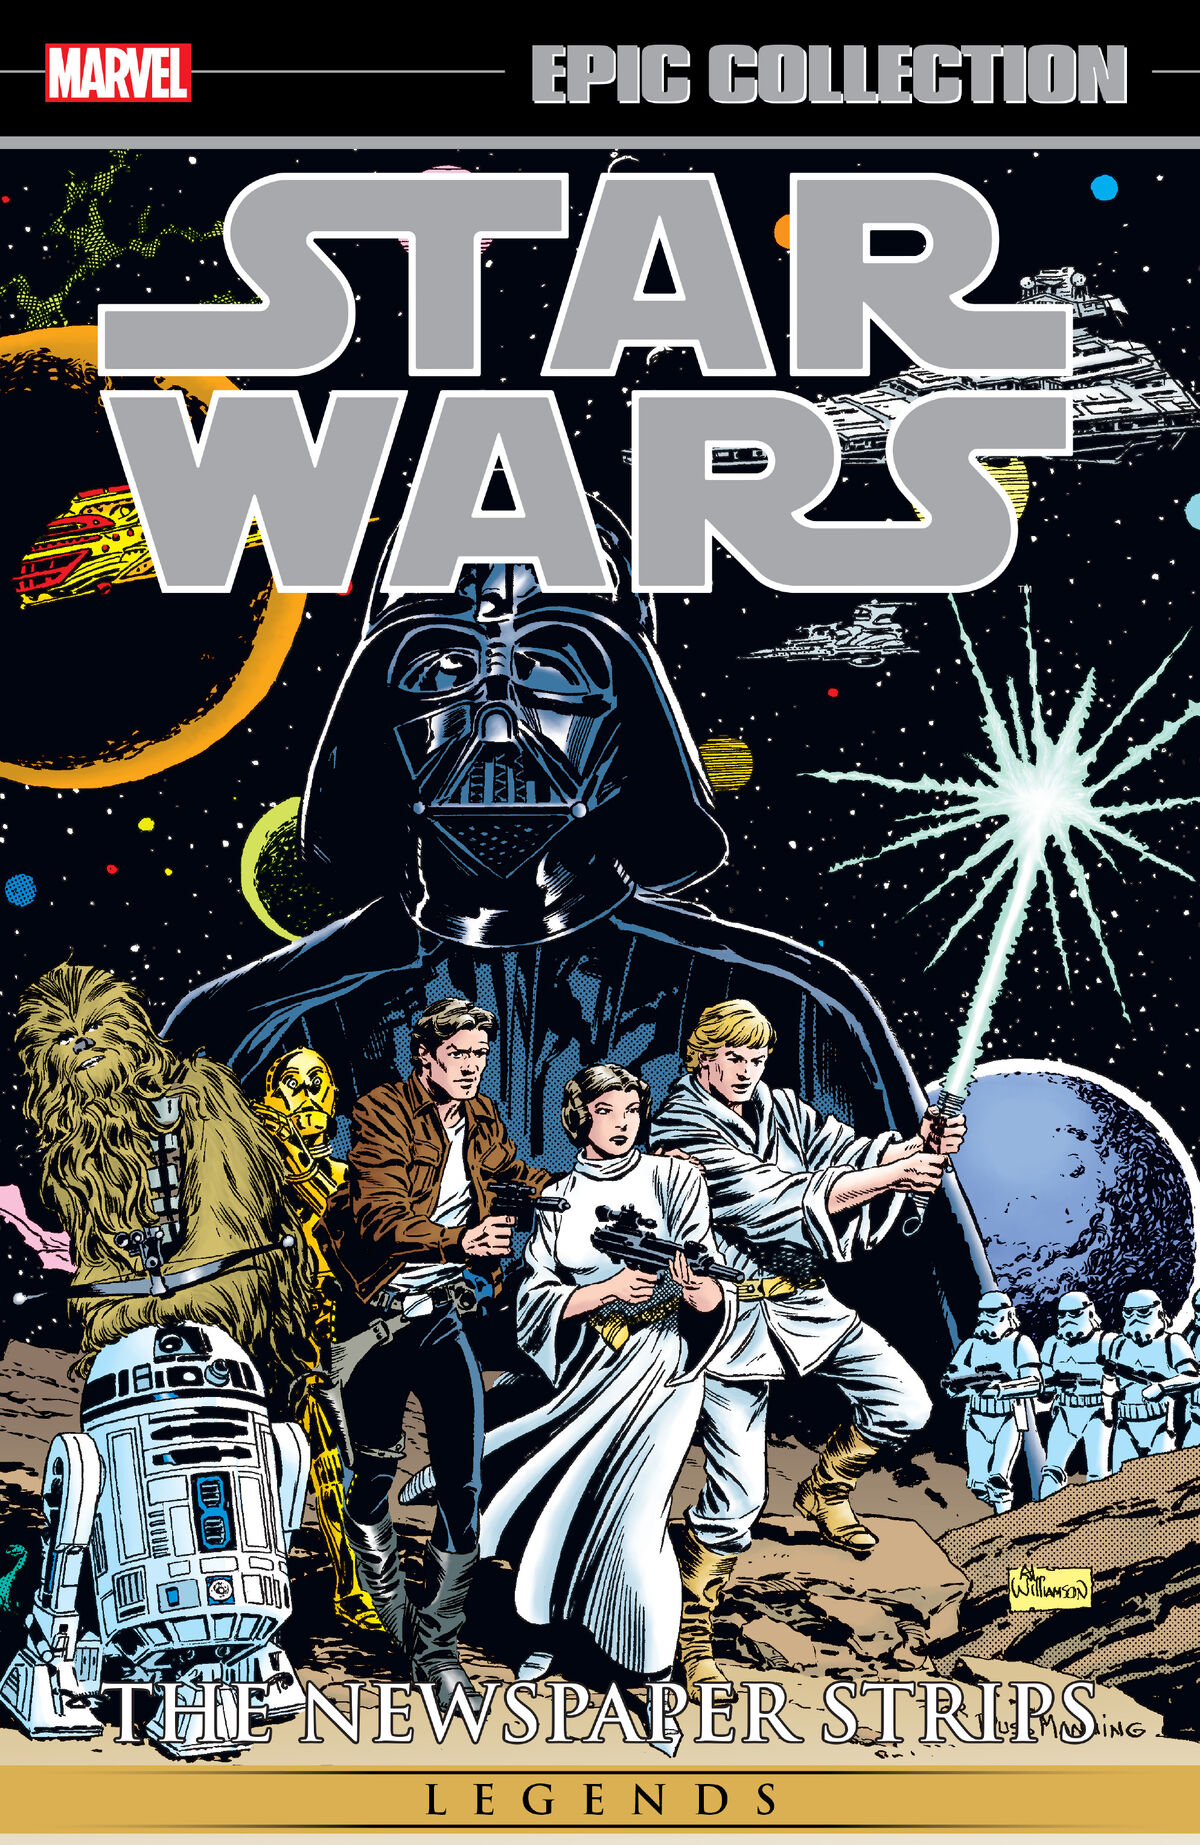 Star wars classics collection купить. Комиксы Звездные войны классика 3. Star Wars классический Постер. Star Wars Legends. Star Wars обложка.